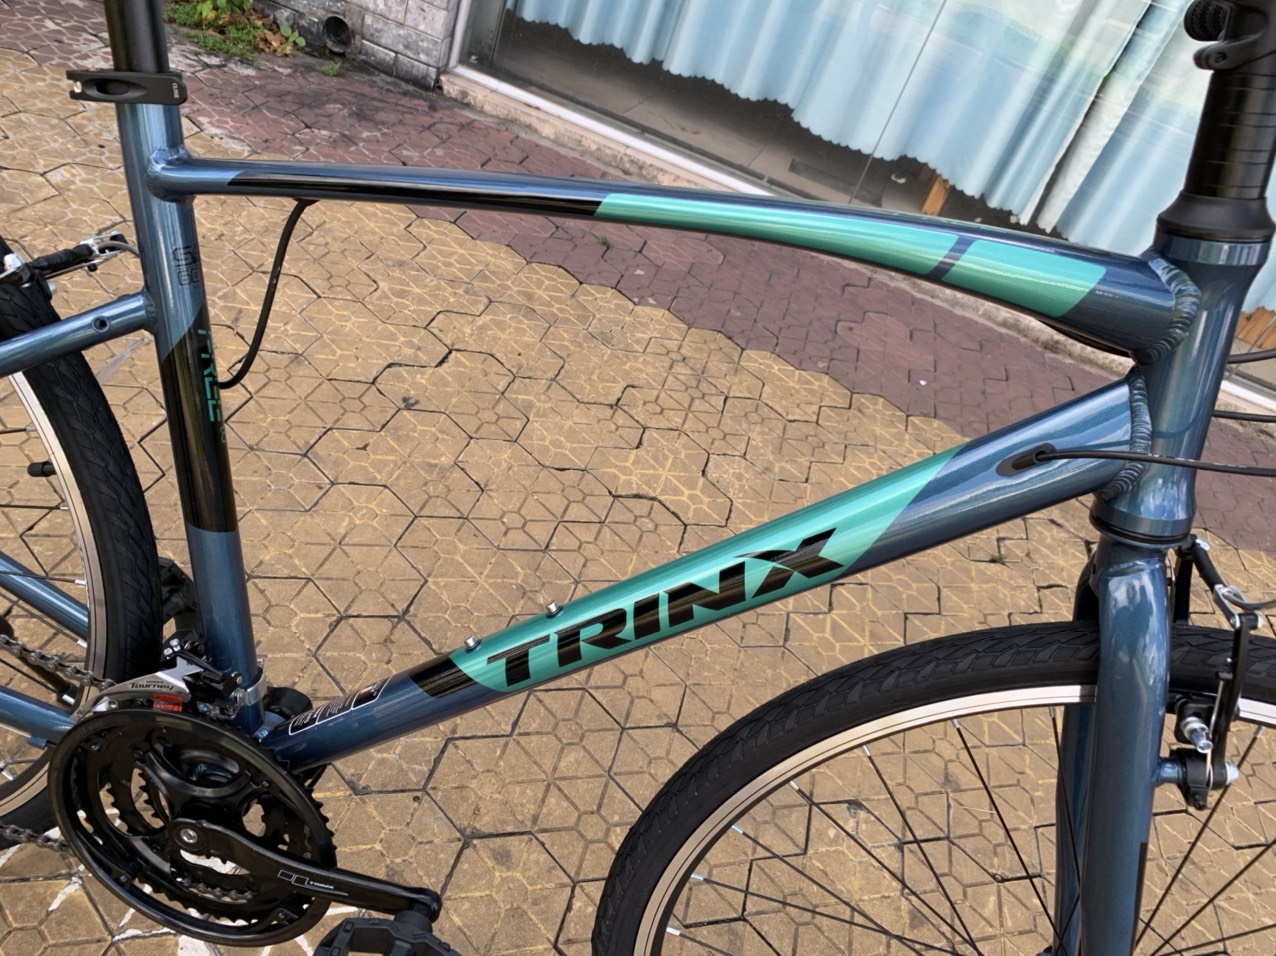 Xe đạp thể thao TRINX FREE 1.0 2020 Blue Black